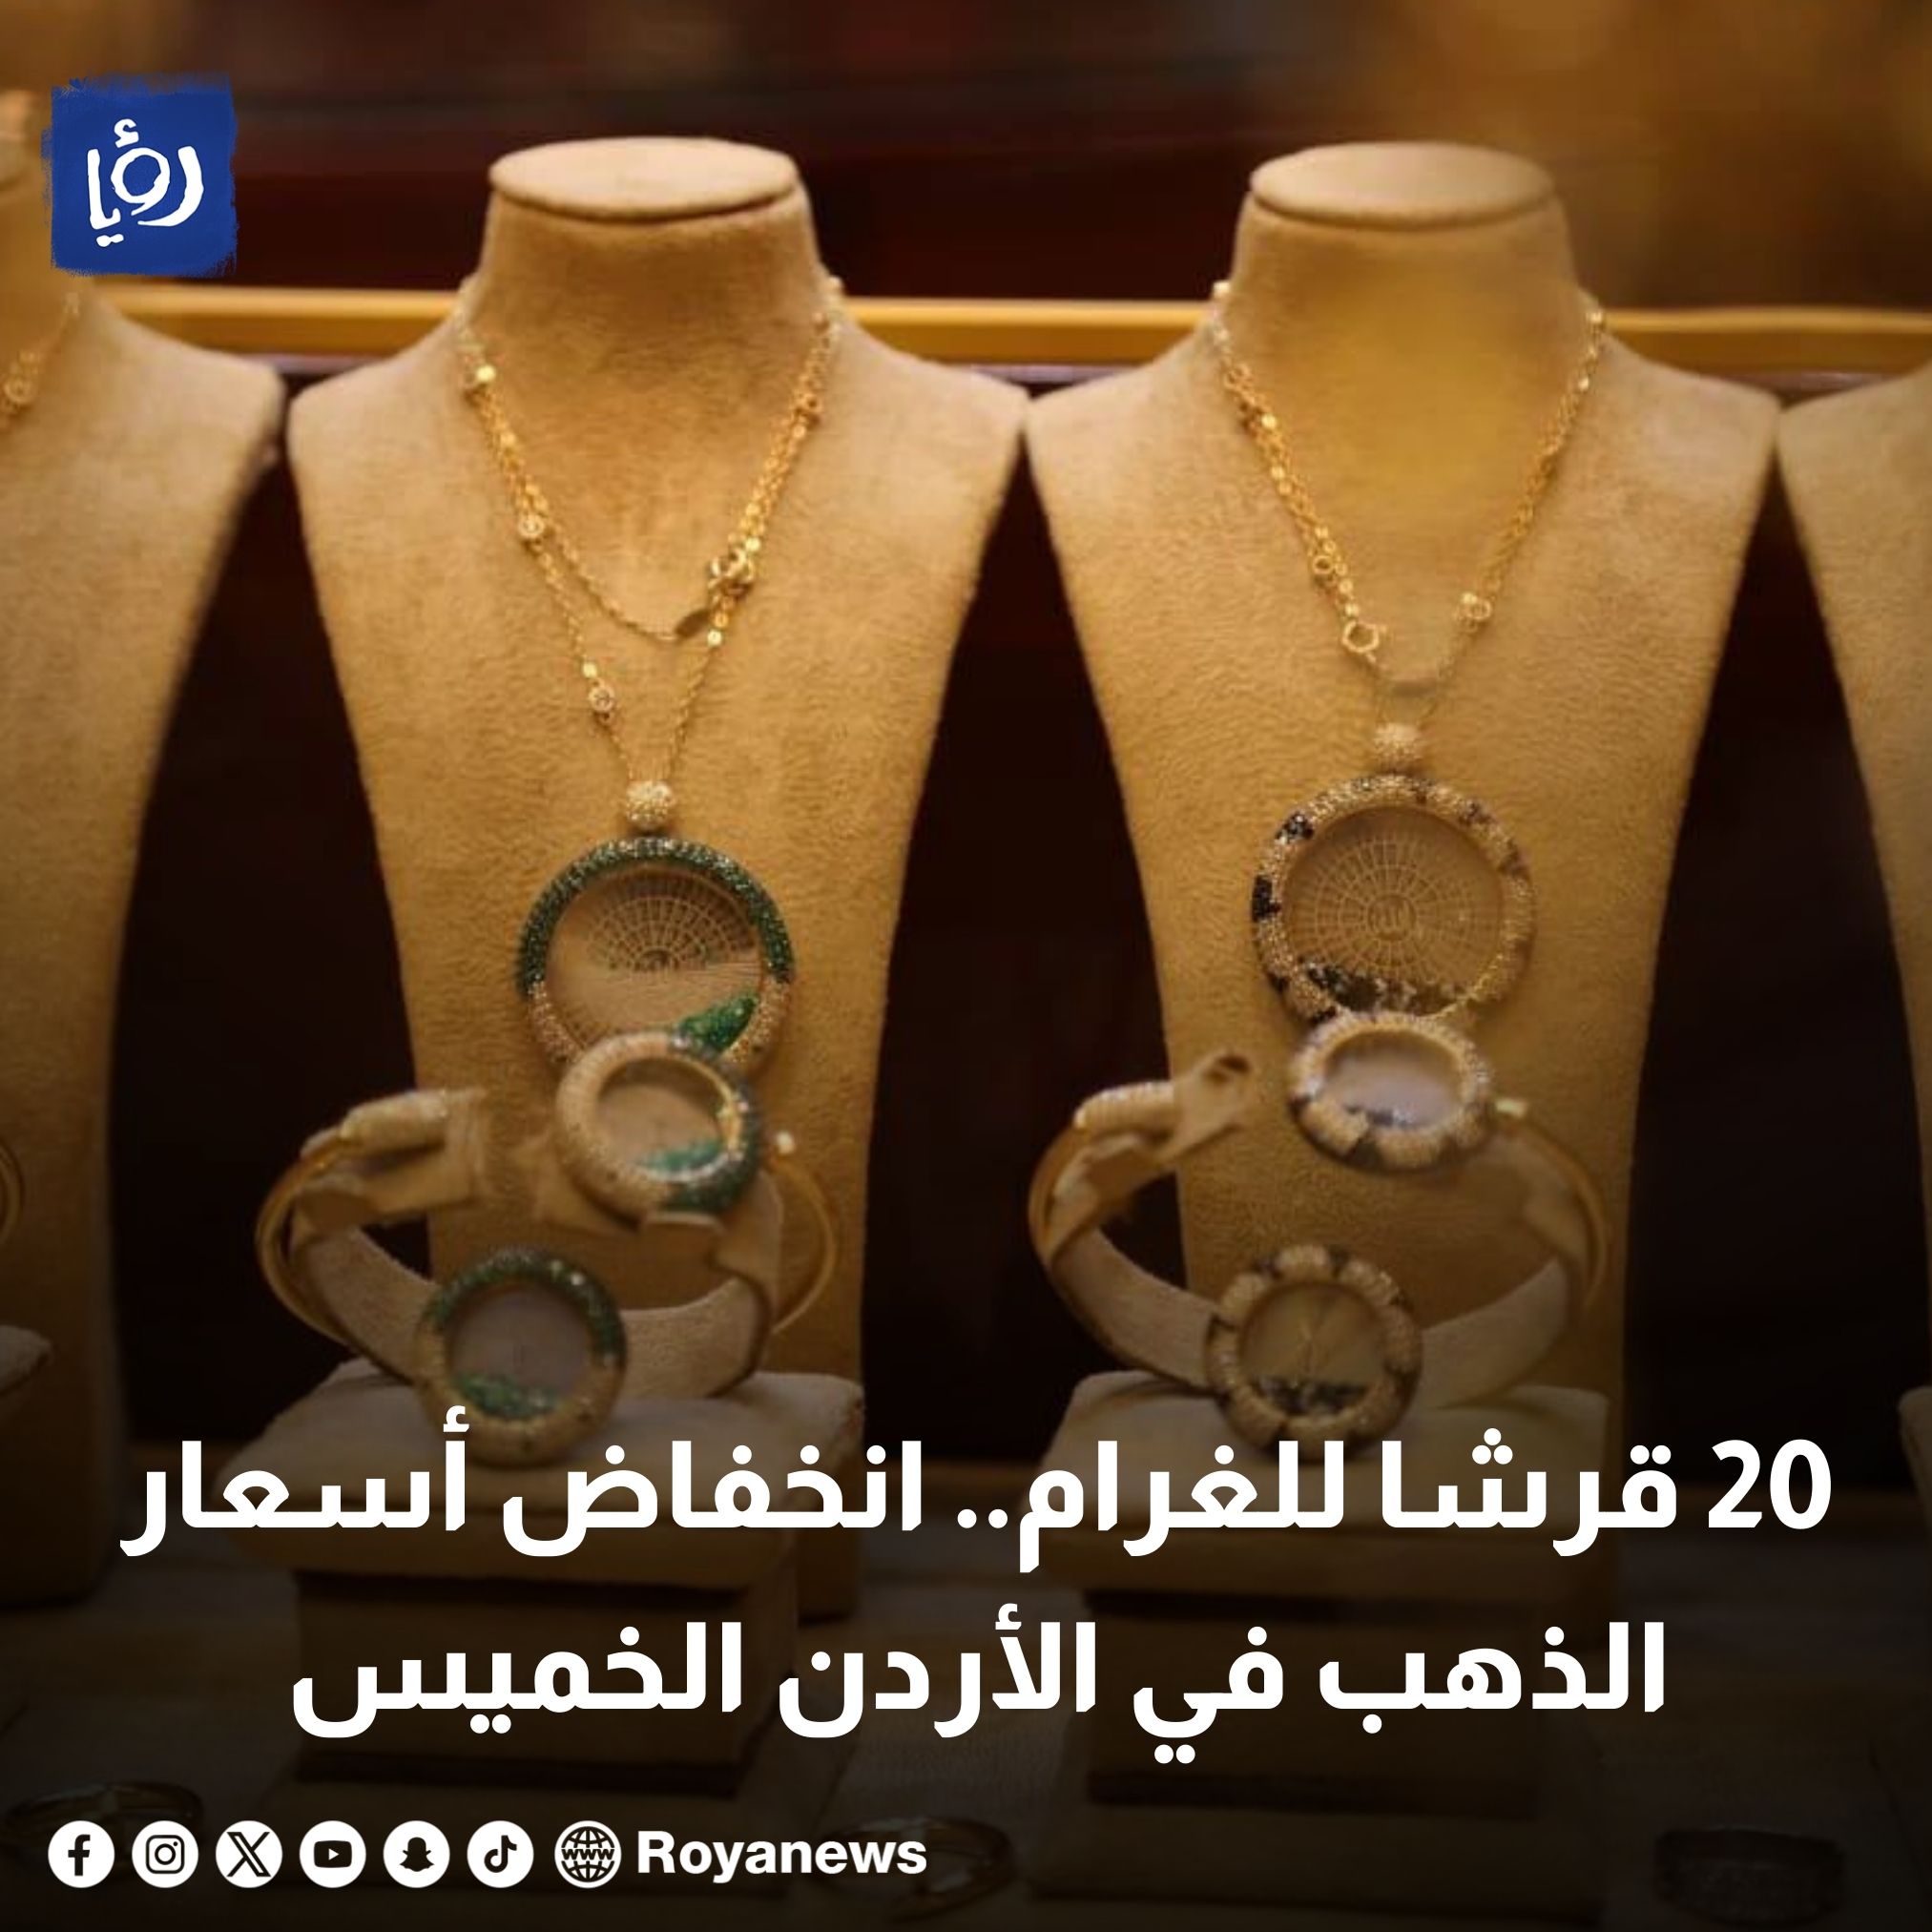 20 قرشًا للغرام.. انخفاض أسعار الذهب في الأردن الخميس #رؤيا_الإخباري 